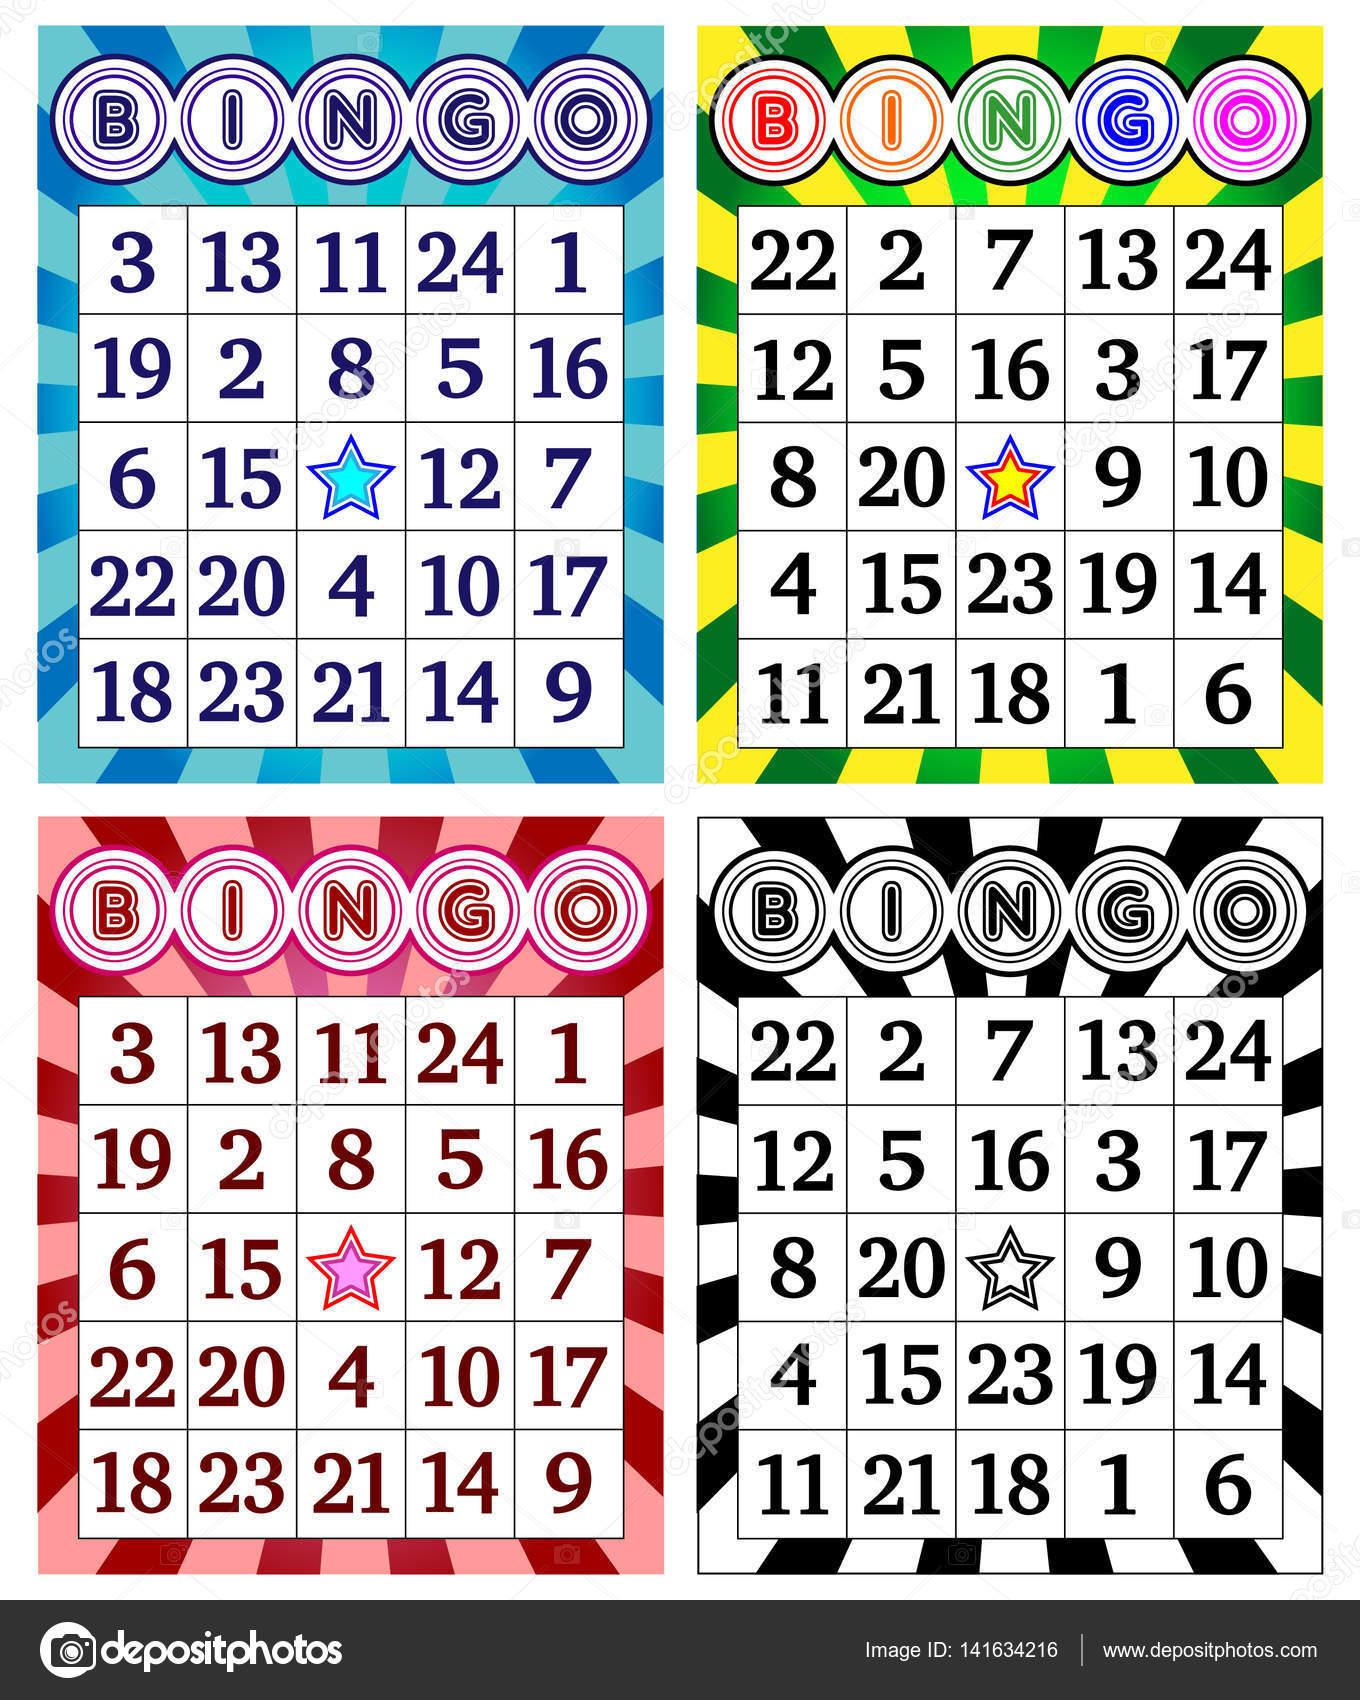 jogos de azar bingo